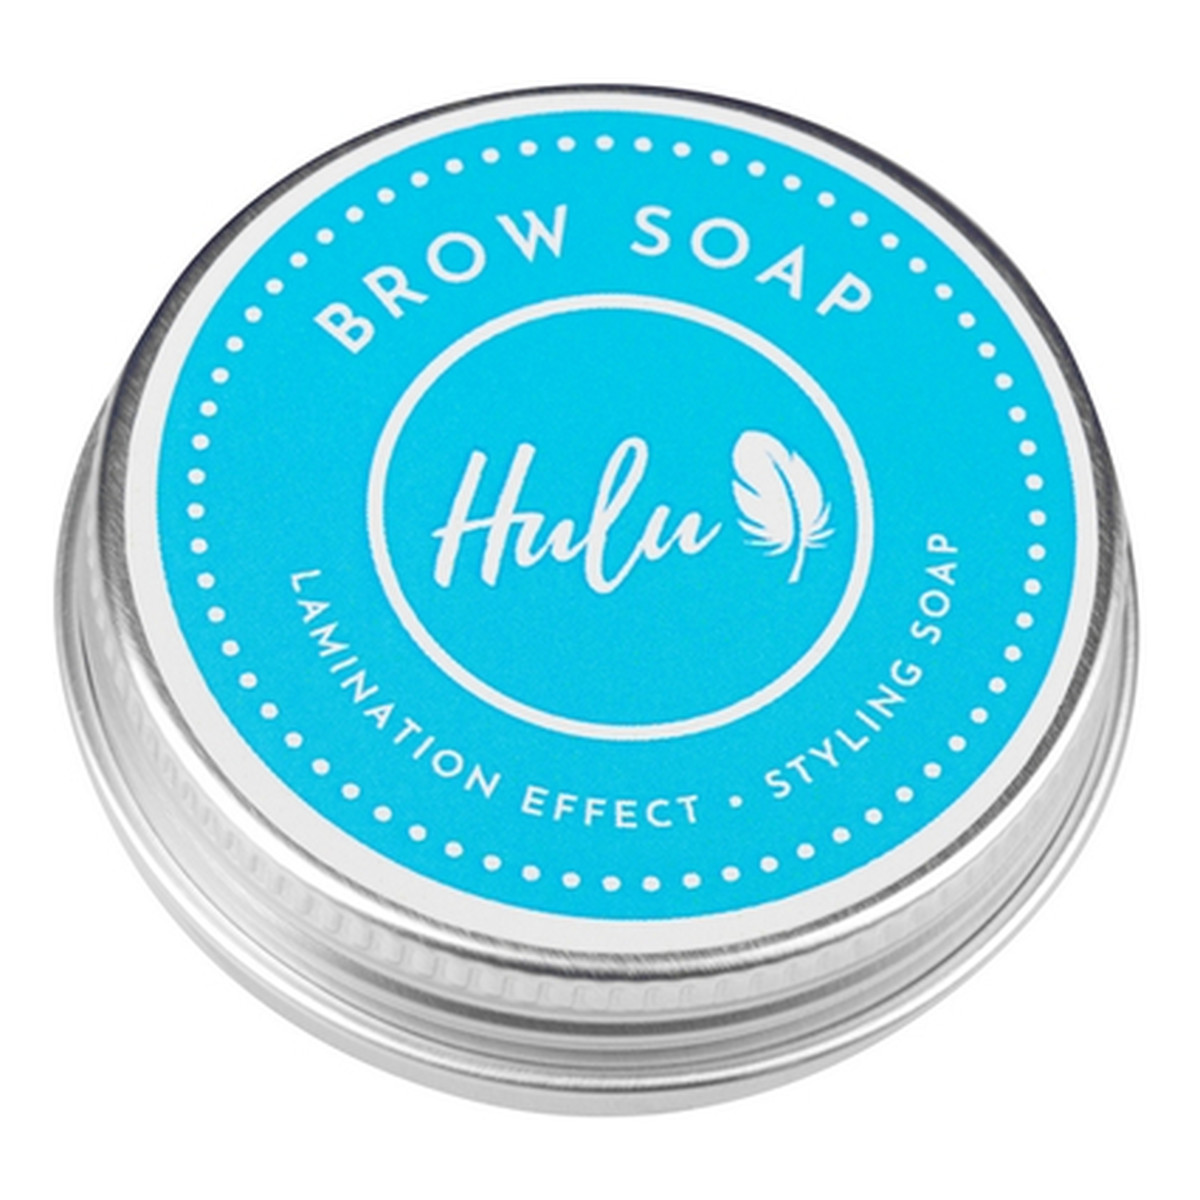 Hulu Mydełko Brow Soap Do Brwi 30ml